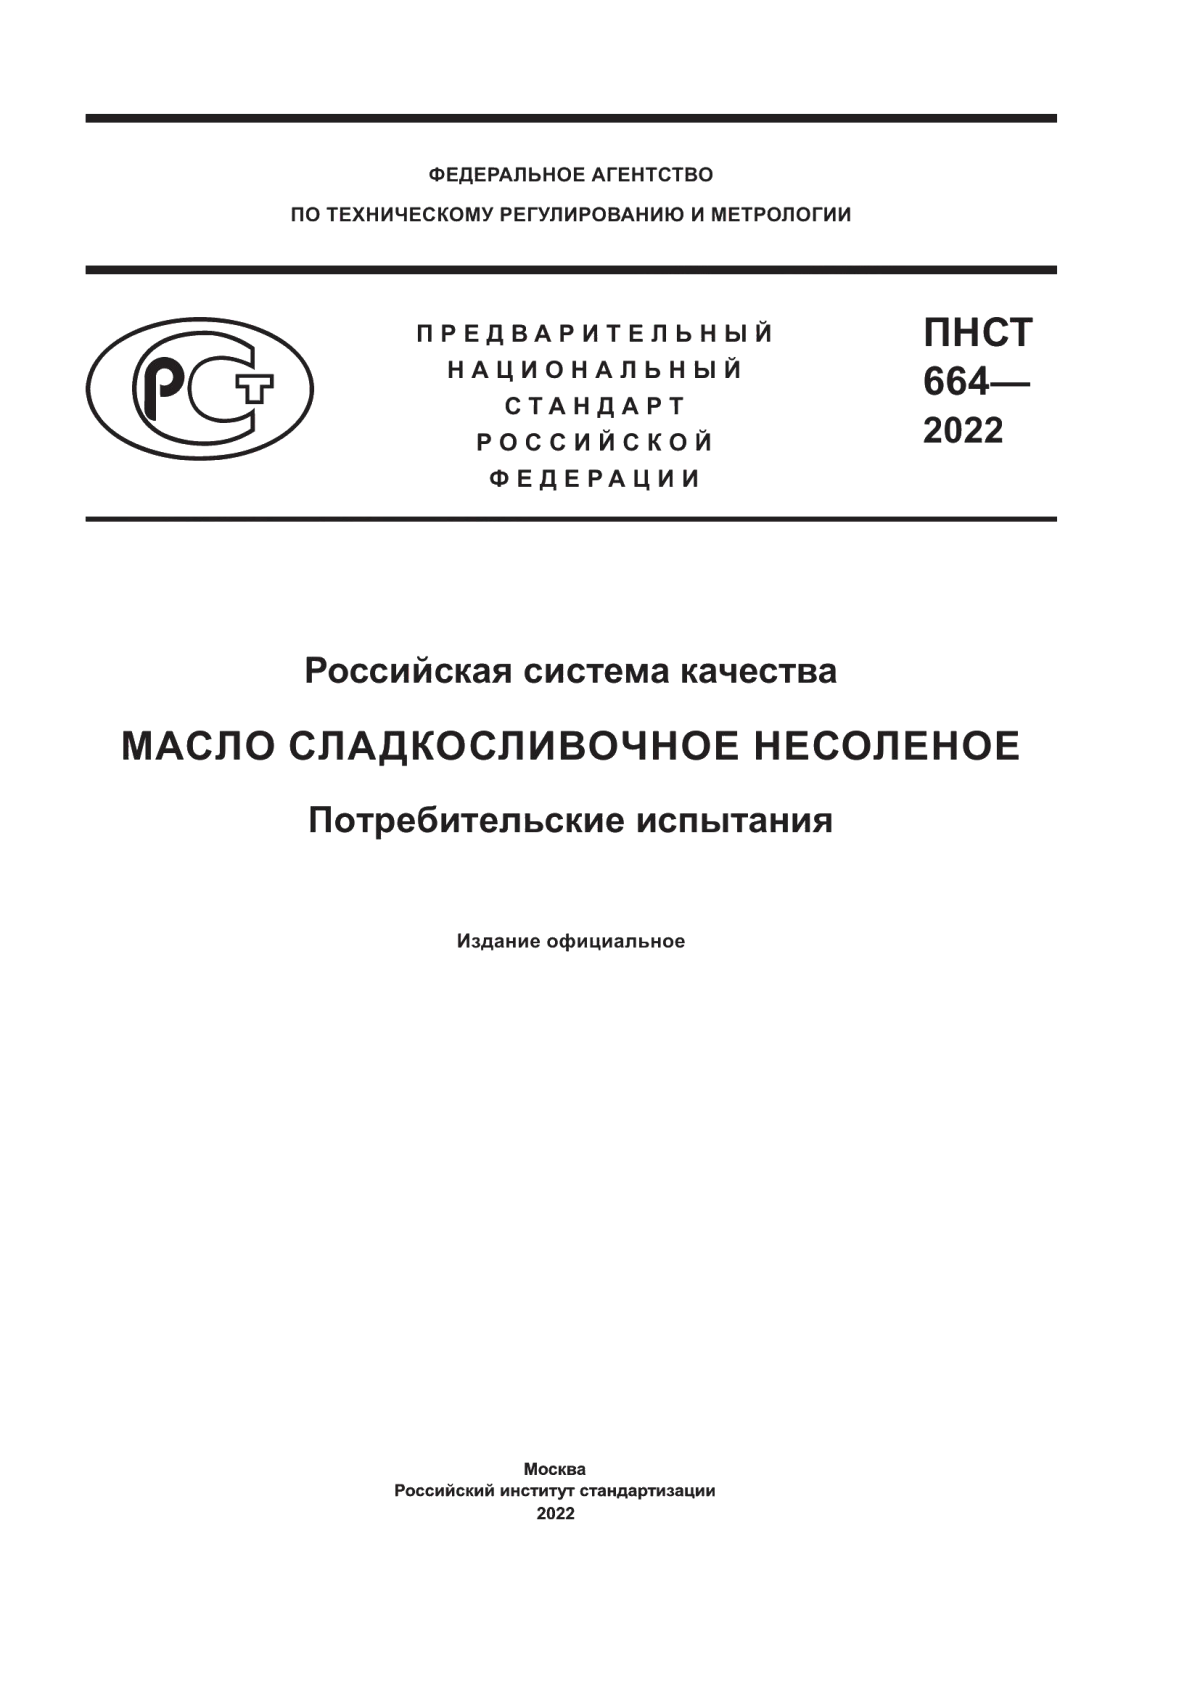 ПНСТ 664-2022 Российская система качества. Масло сладкосливочное несоленое. Потребительские испытания